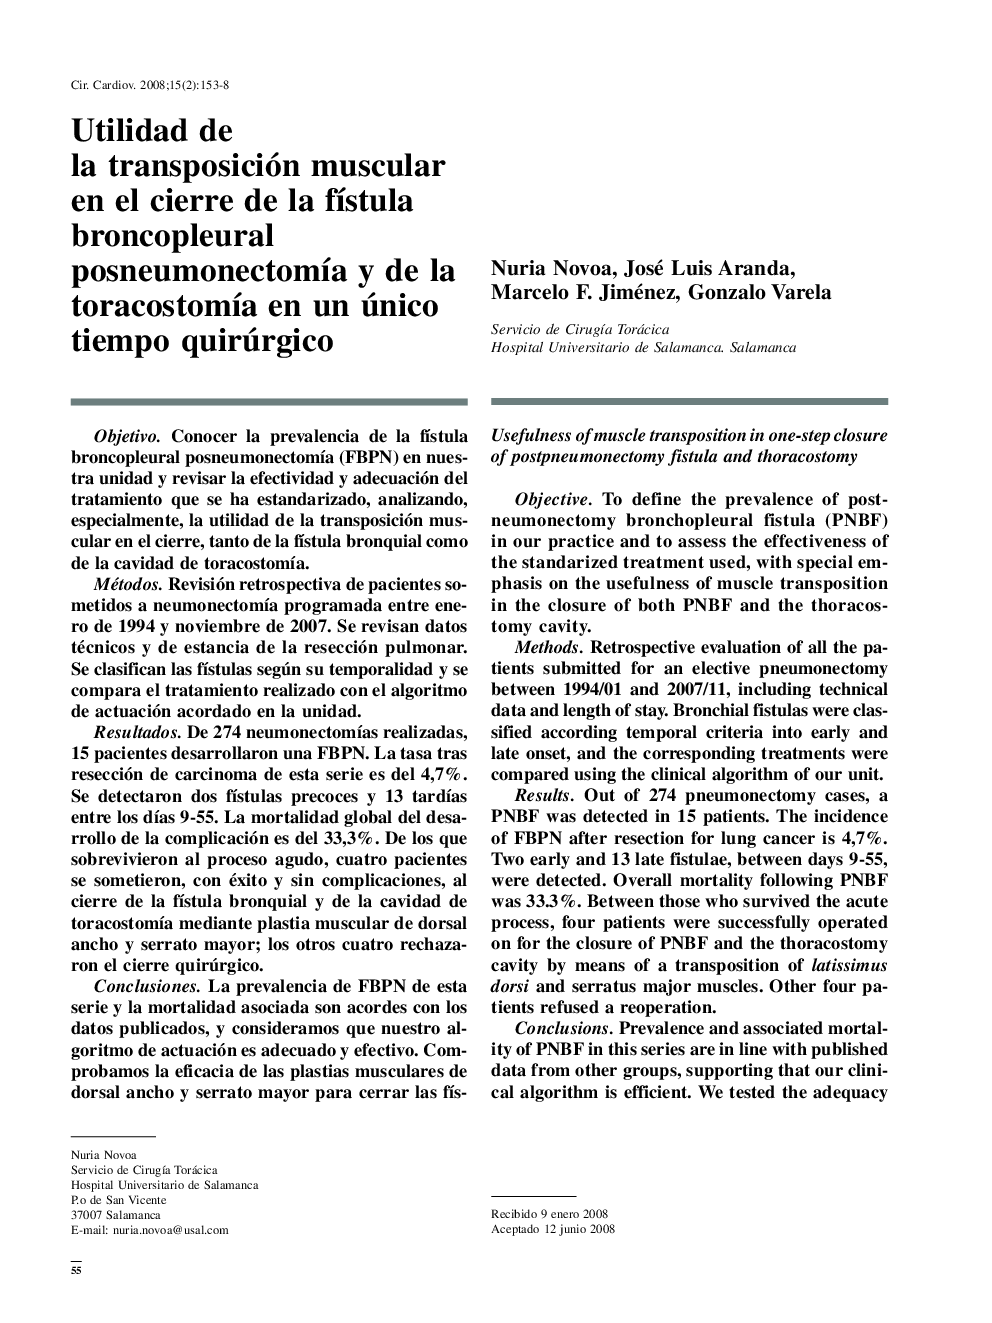 Utilidad de la transposición muscular en el cierre de la fístula broncopleural posneumonectomía y de la toracostomía en un único tiempo quirúrgico